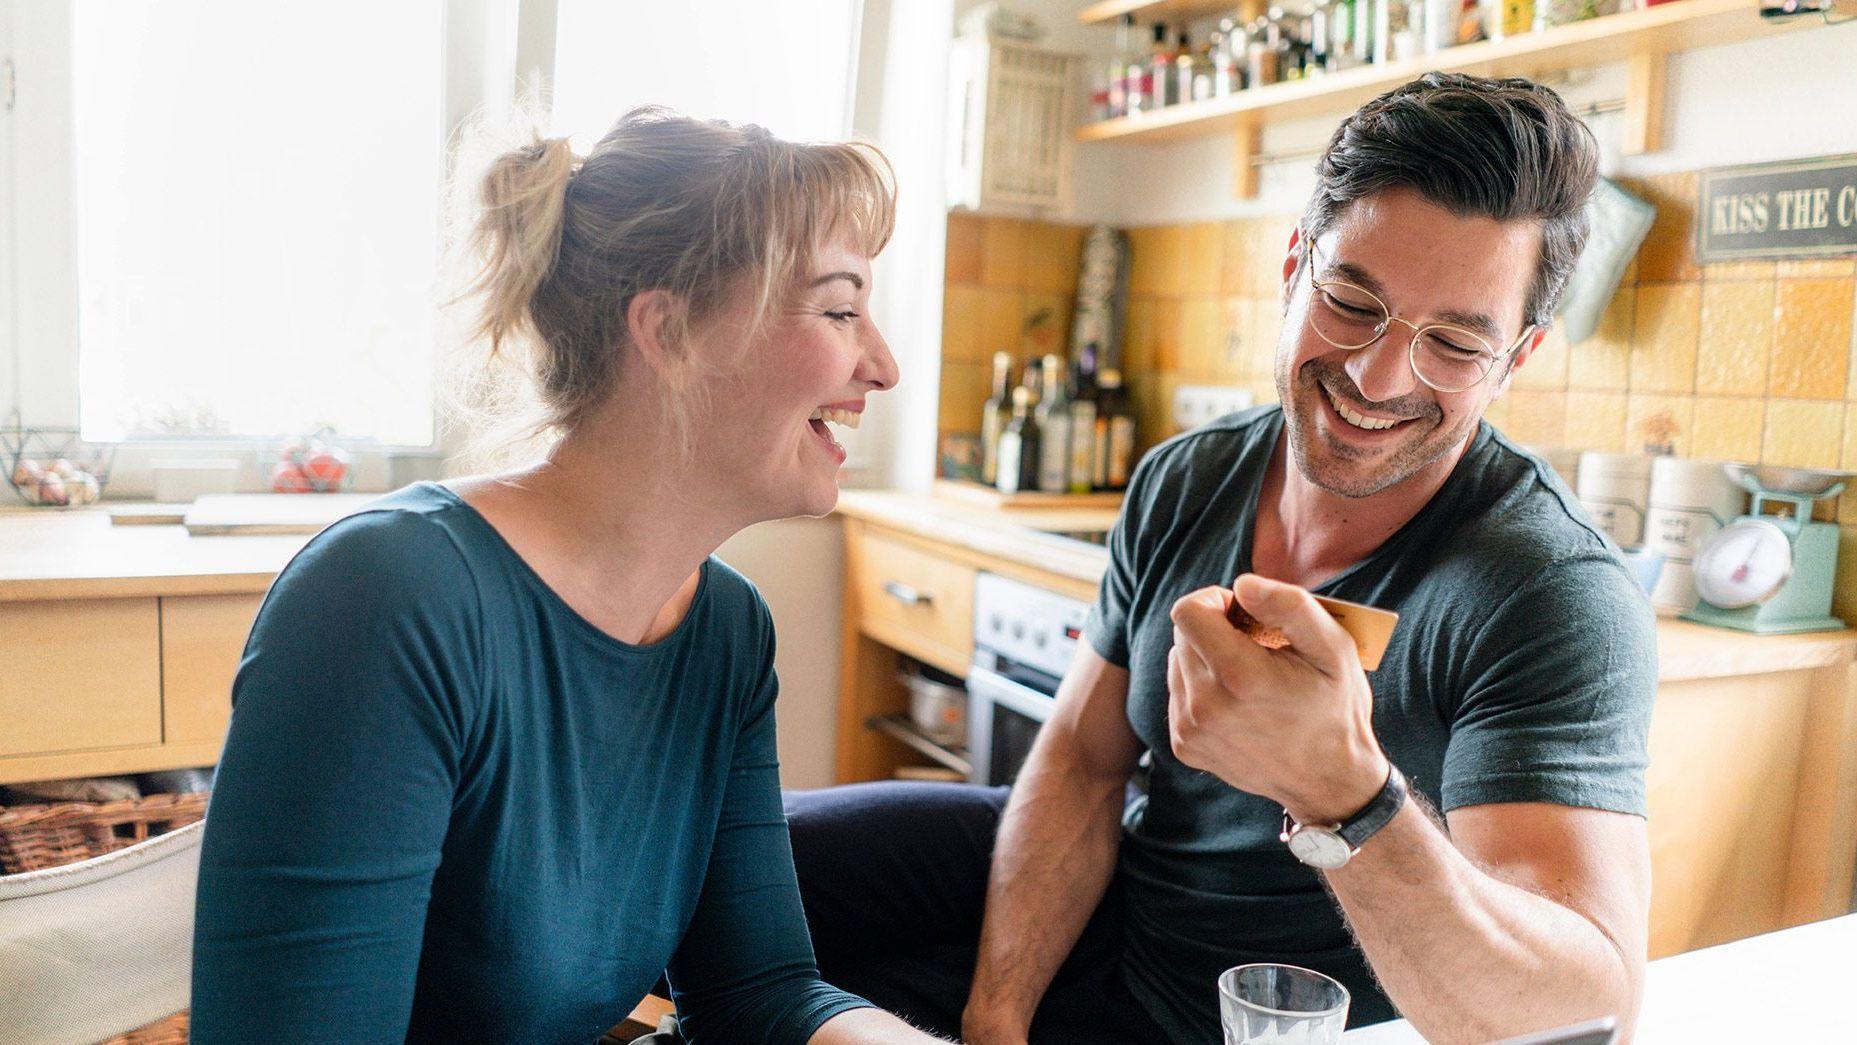 Eine Frau und ein Mann sitzen in einer gemütlichen Küche und Lachen. Beide schauen auf eine Bankkarte und lachen ausgelassen.